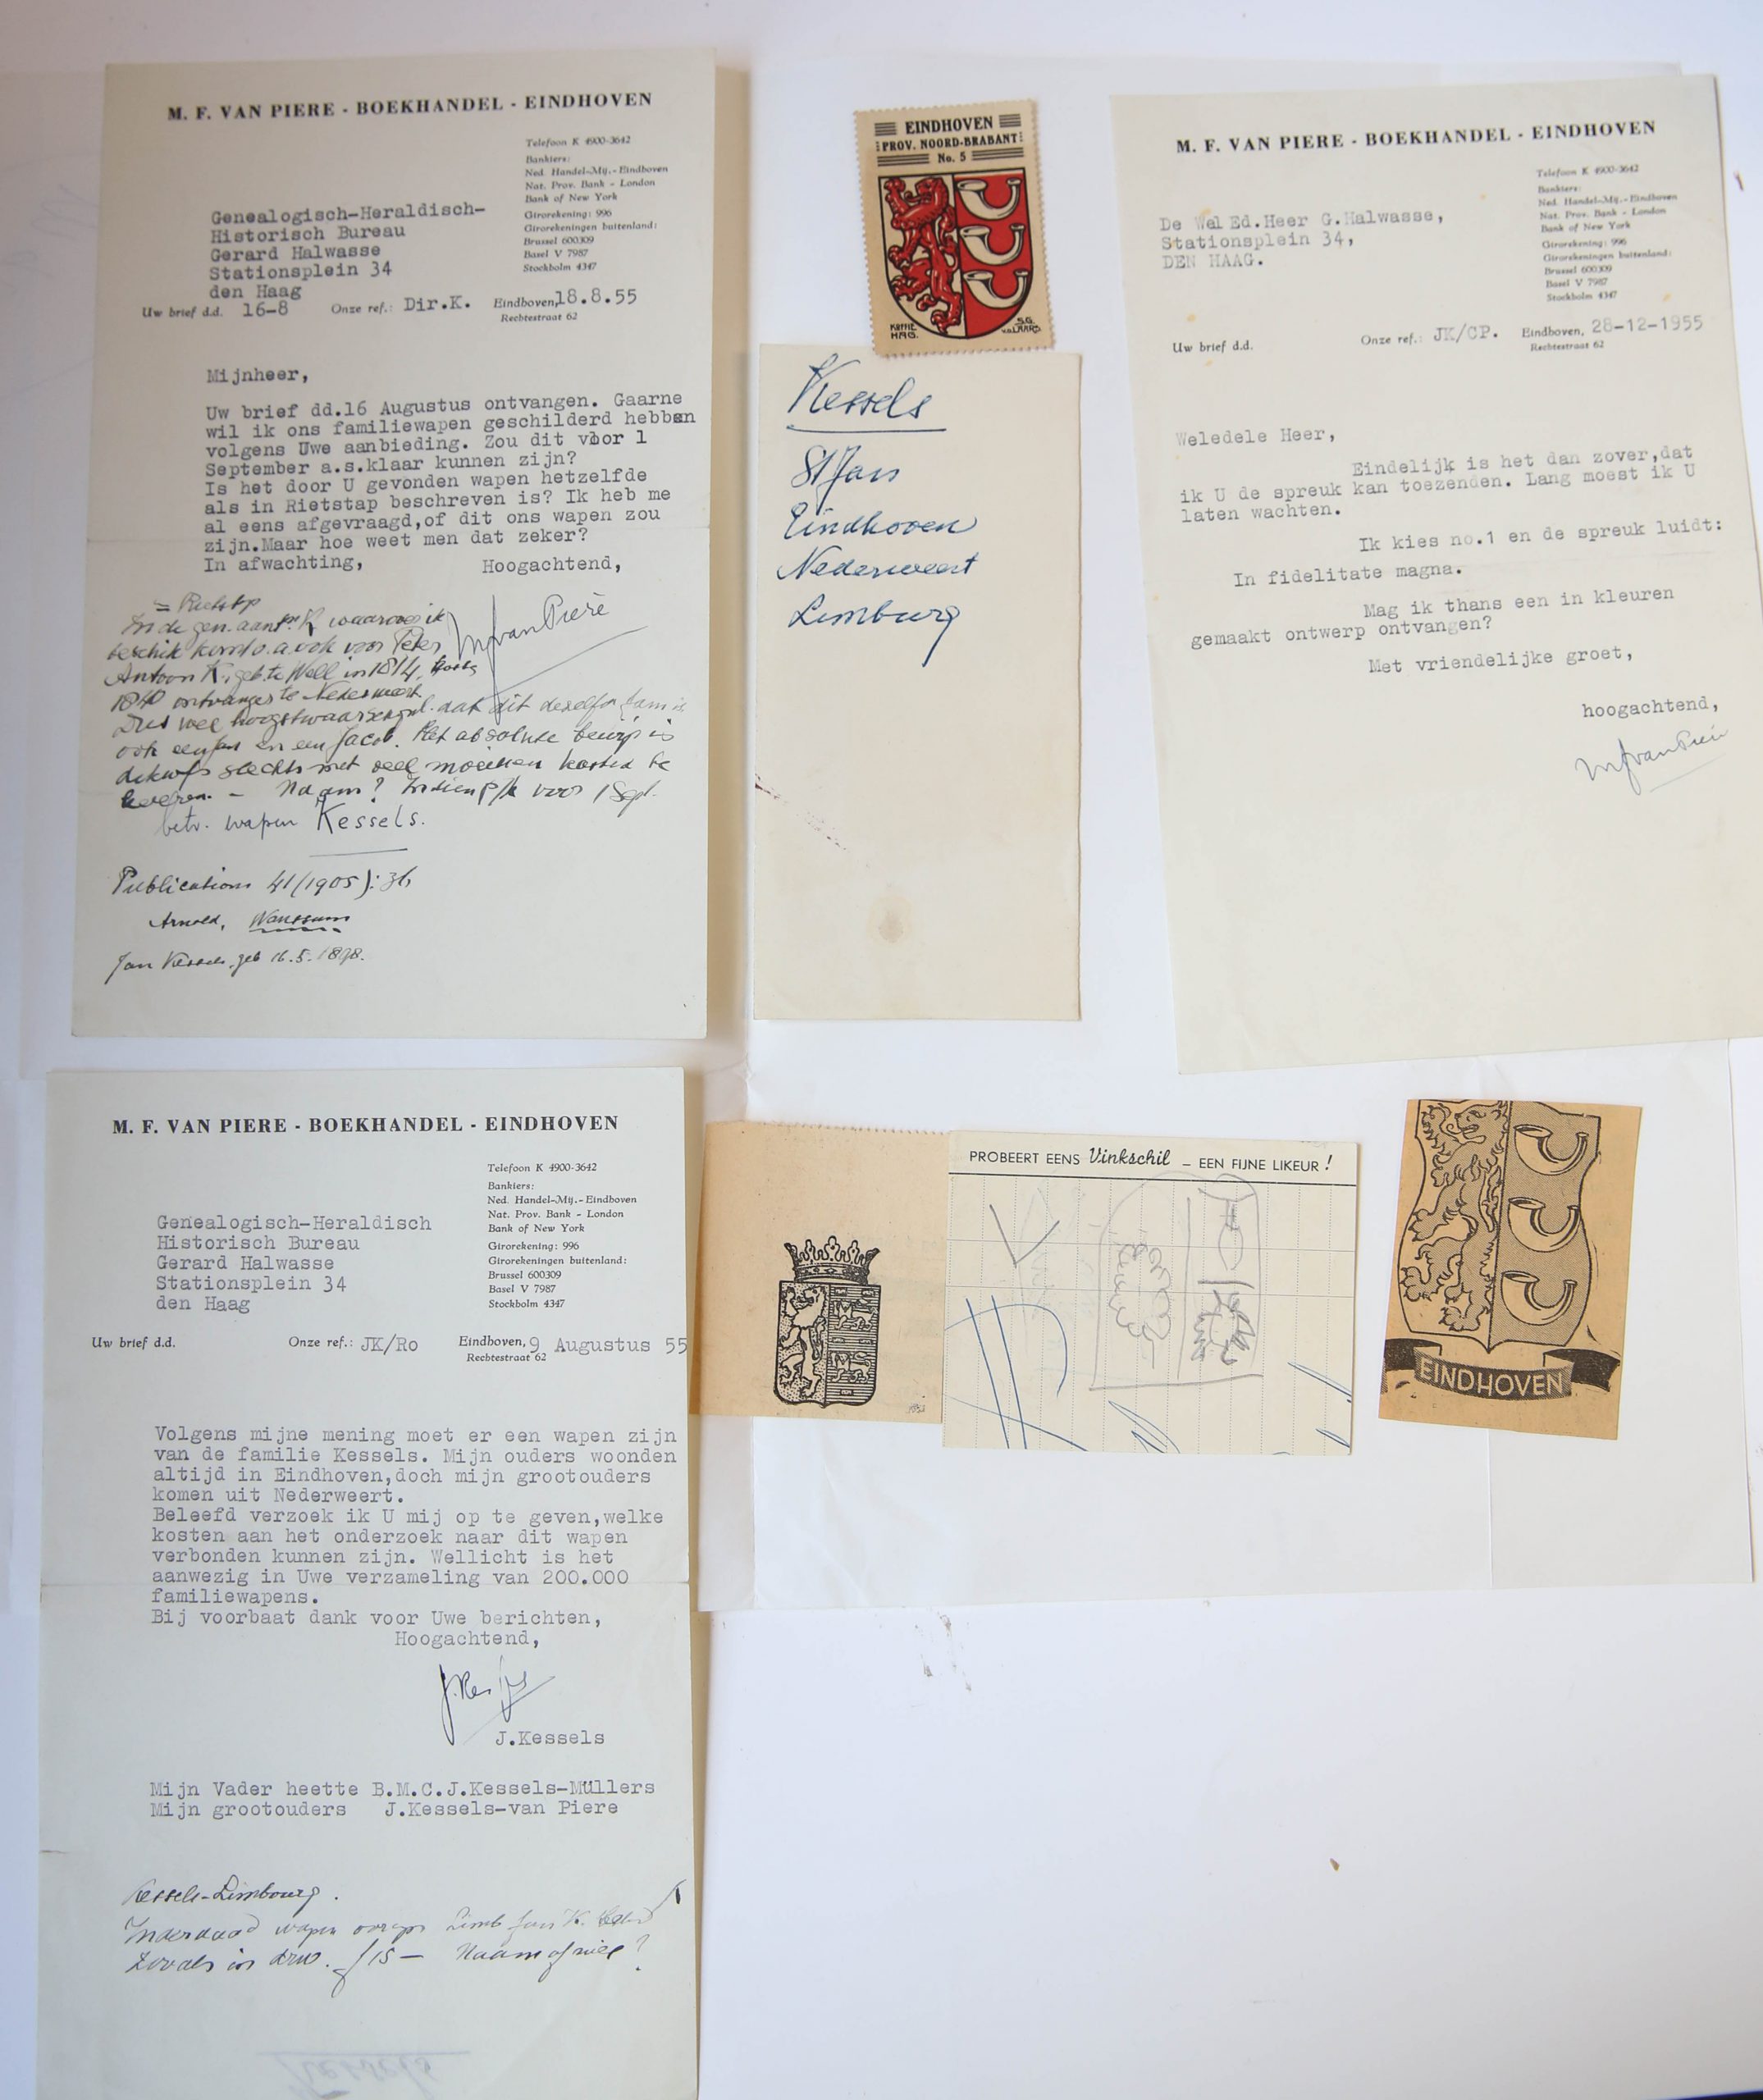  - [Manuscripts 1955] Drie brieven van M.F. van Piere en J. Kessels, d.d. Eindhoven 1955 aan G. Halwasse, betr. familiewapen Kessels. Manuscripten, 3 pag.